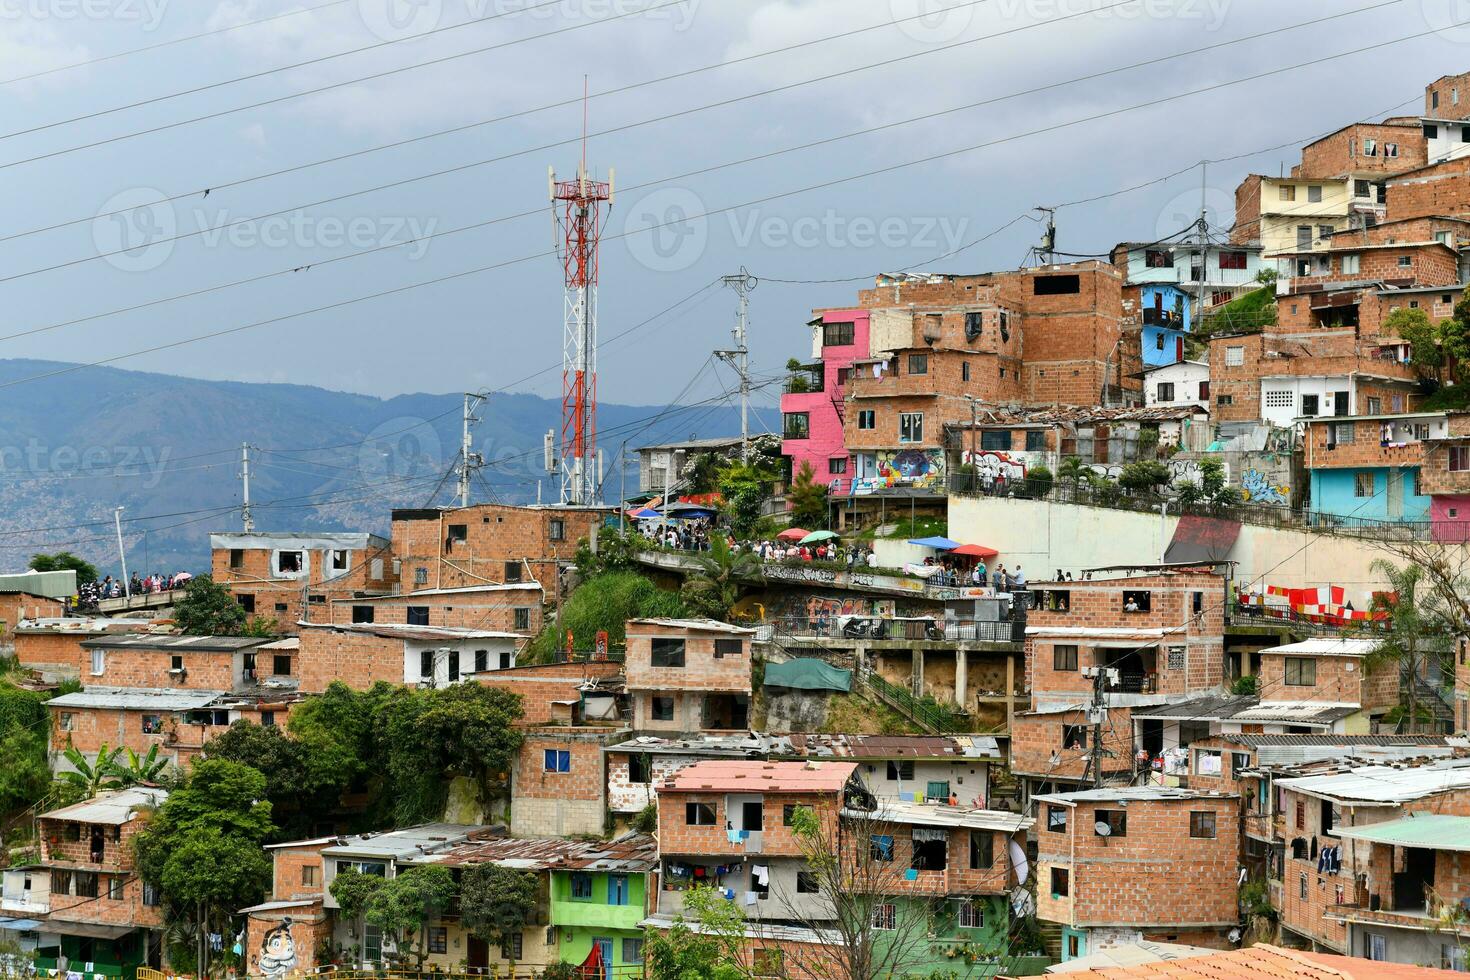 kommun 13 - medellin, colombia foto